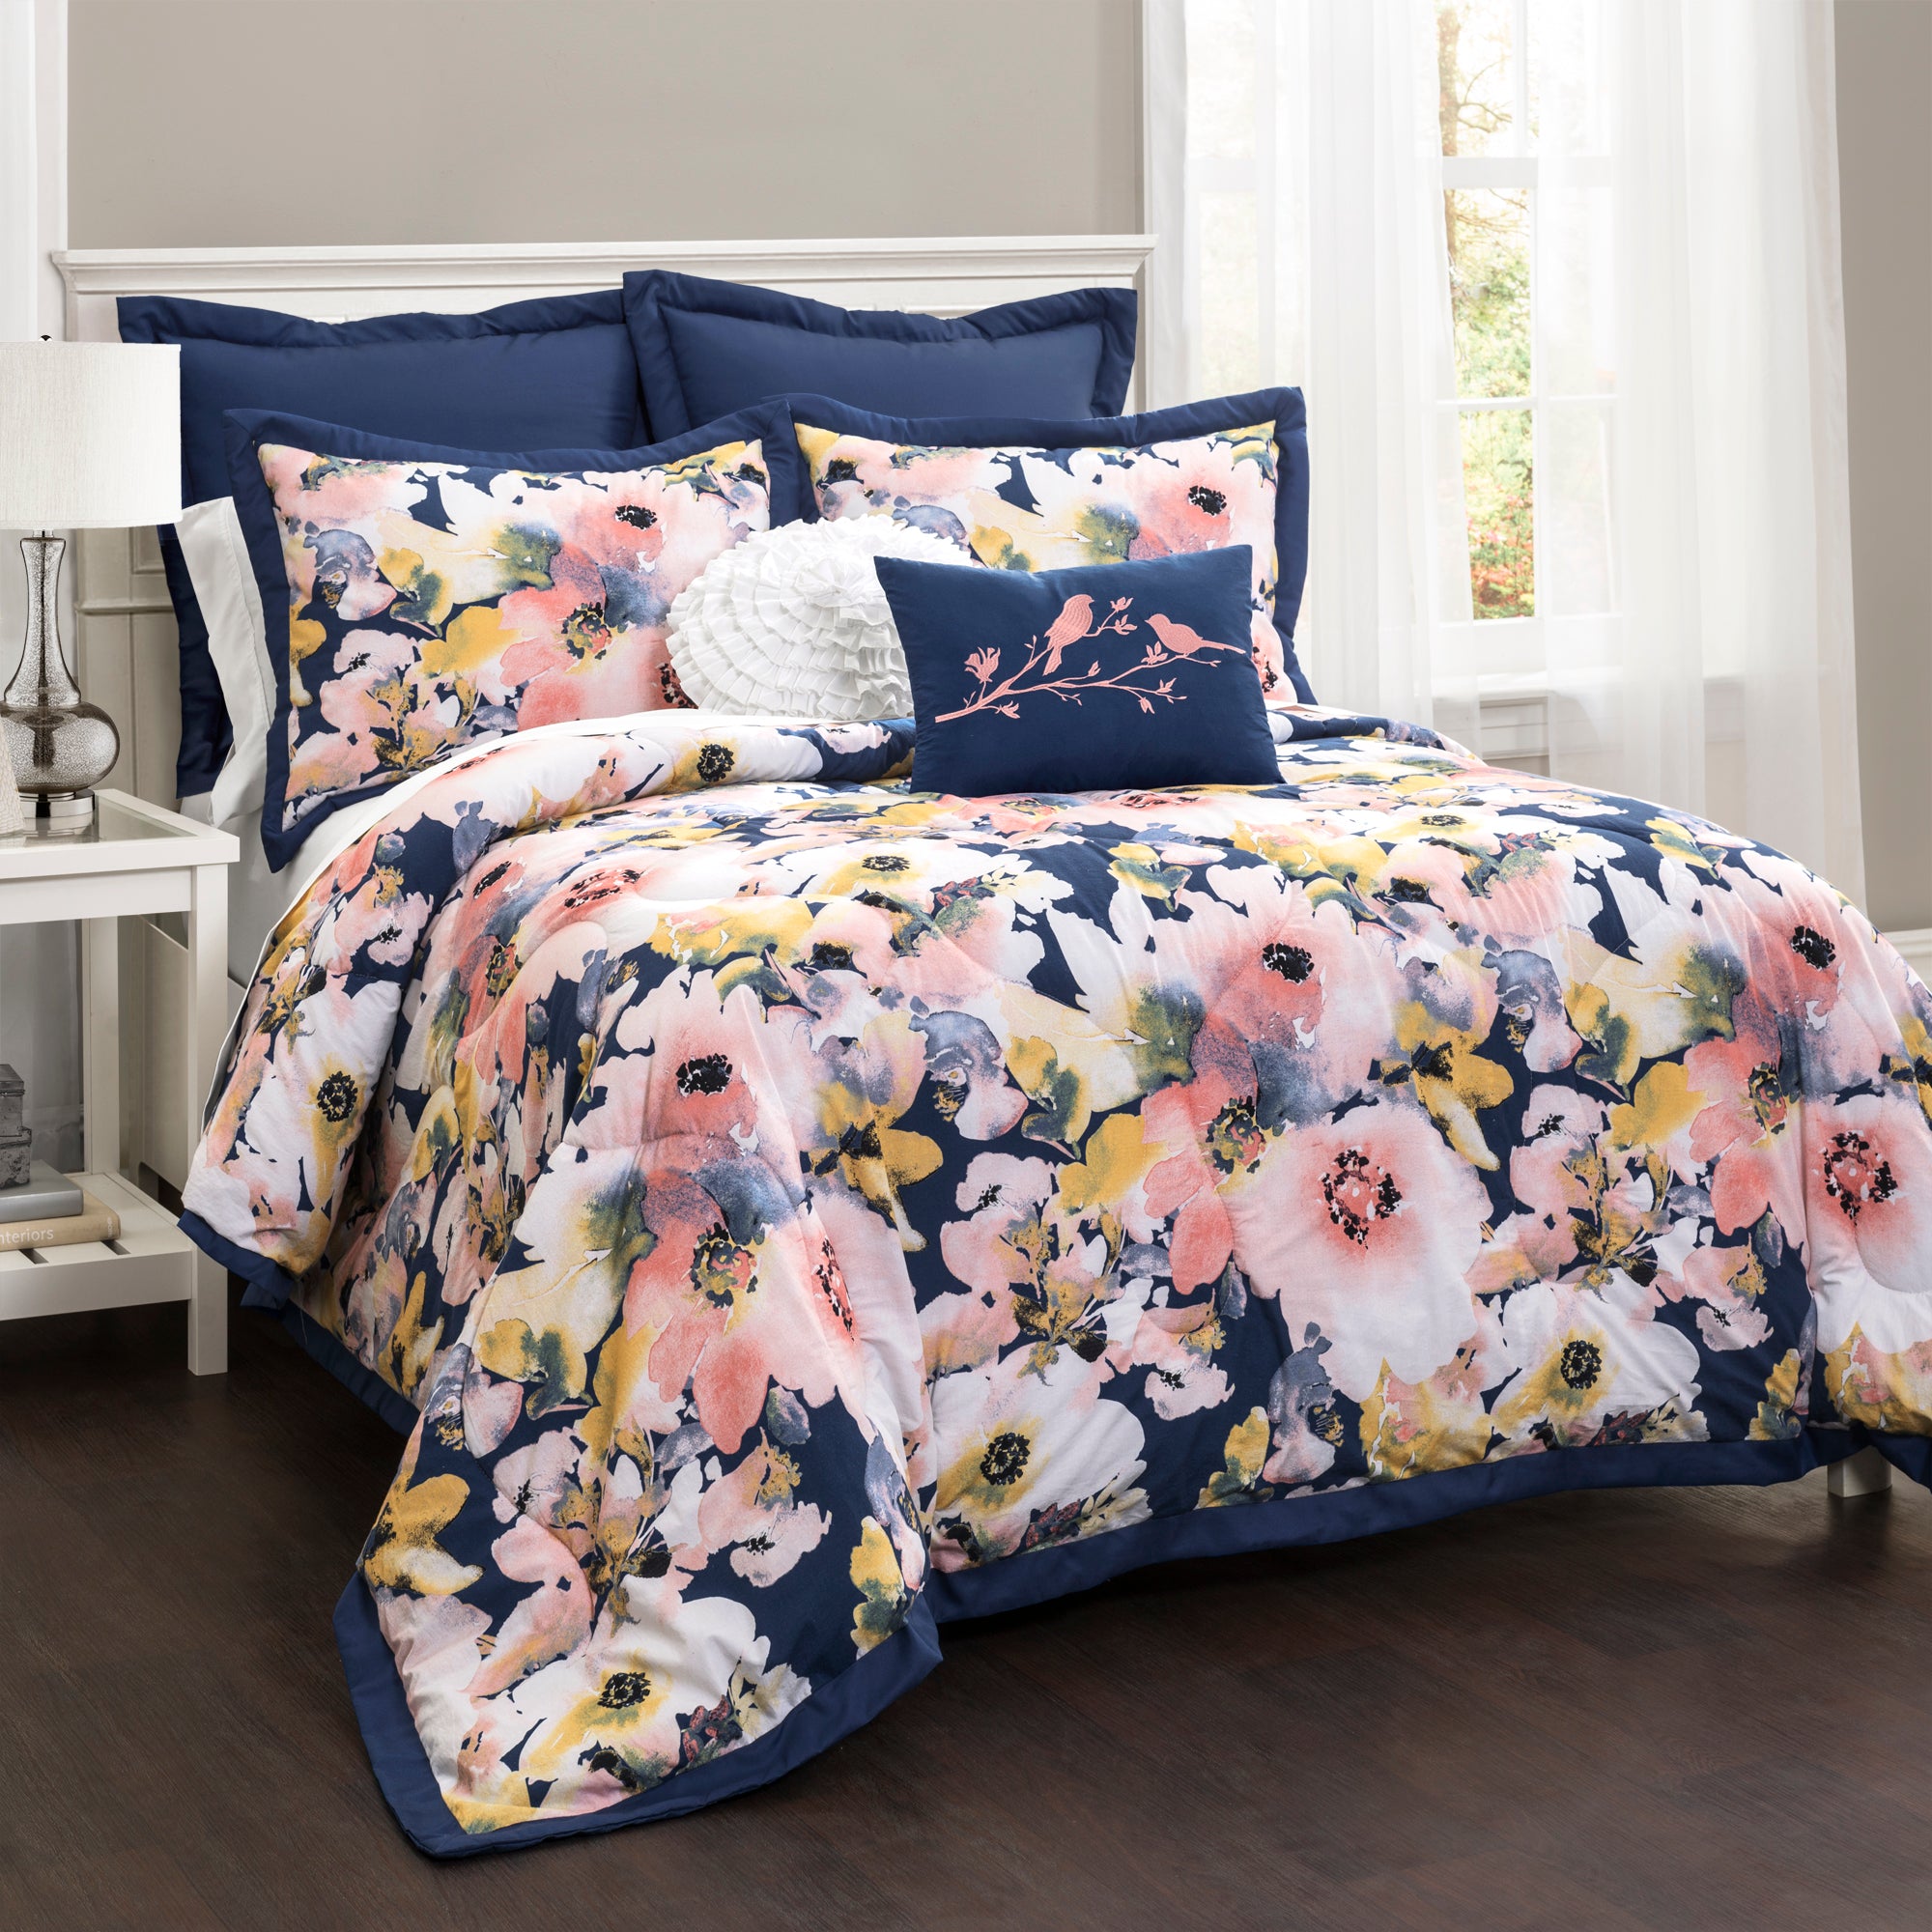 Floral Watercolor Comforter Blue 7Pc Set